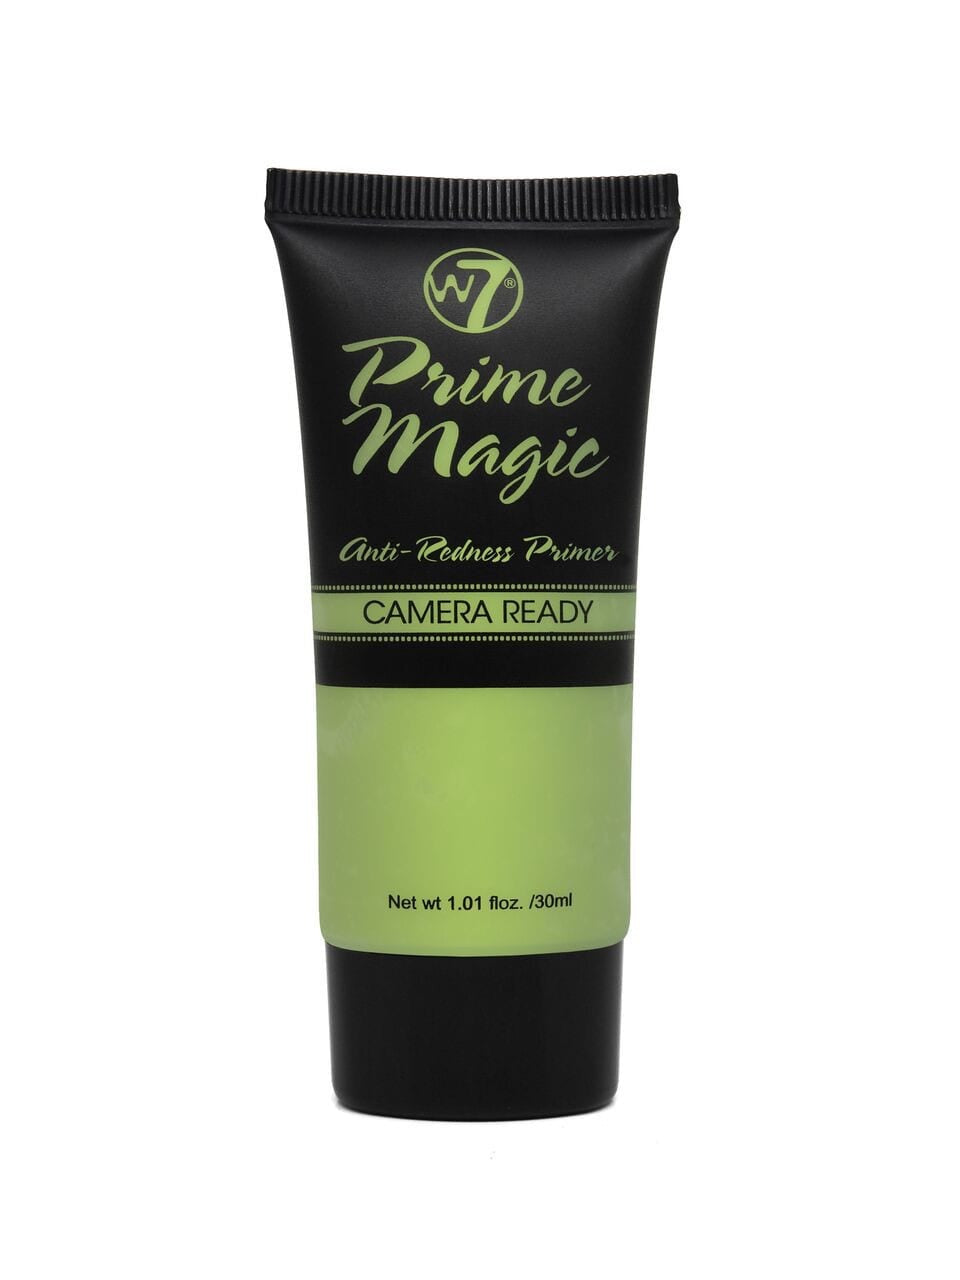 W7 Prime Magic Camera Ready Face Primer Green Anti-Redness